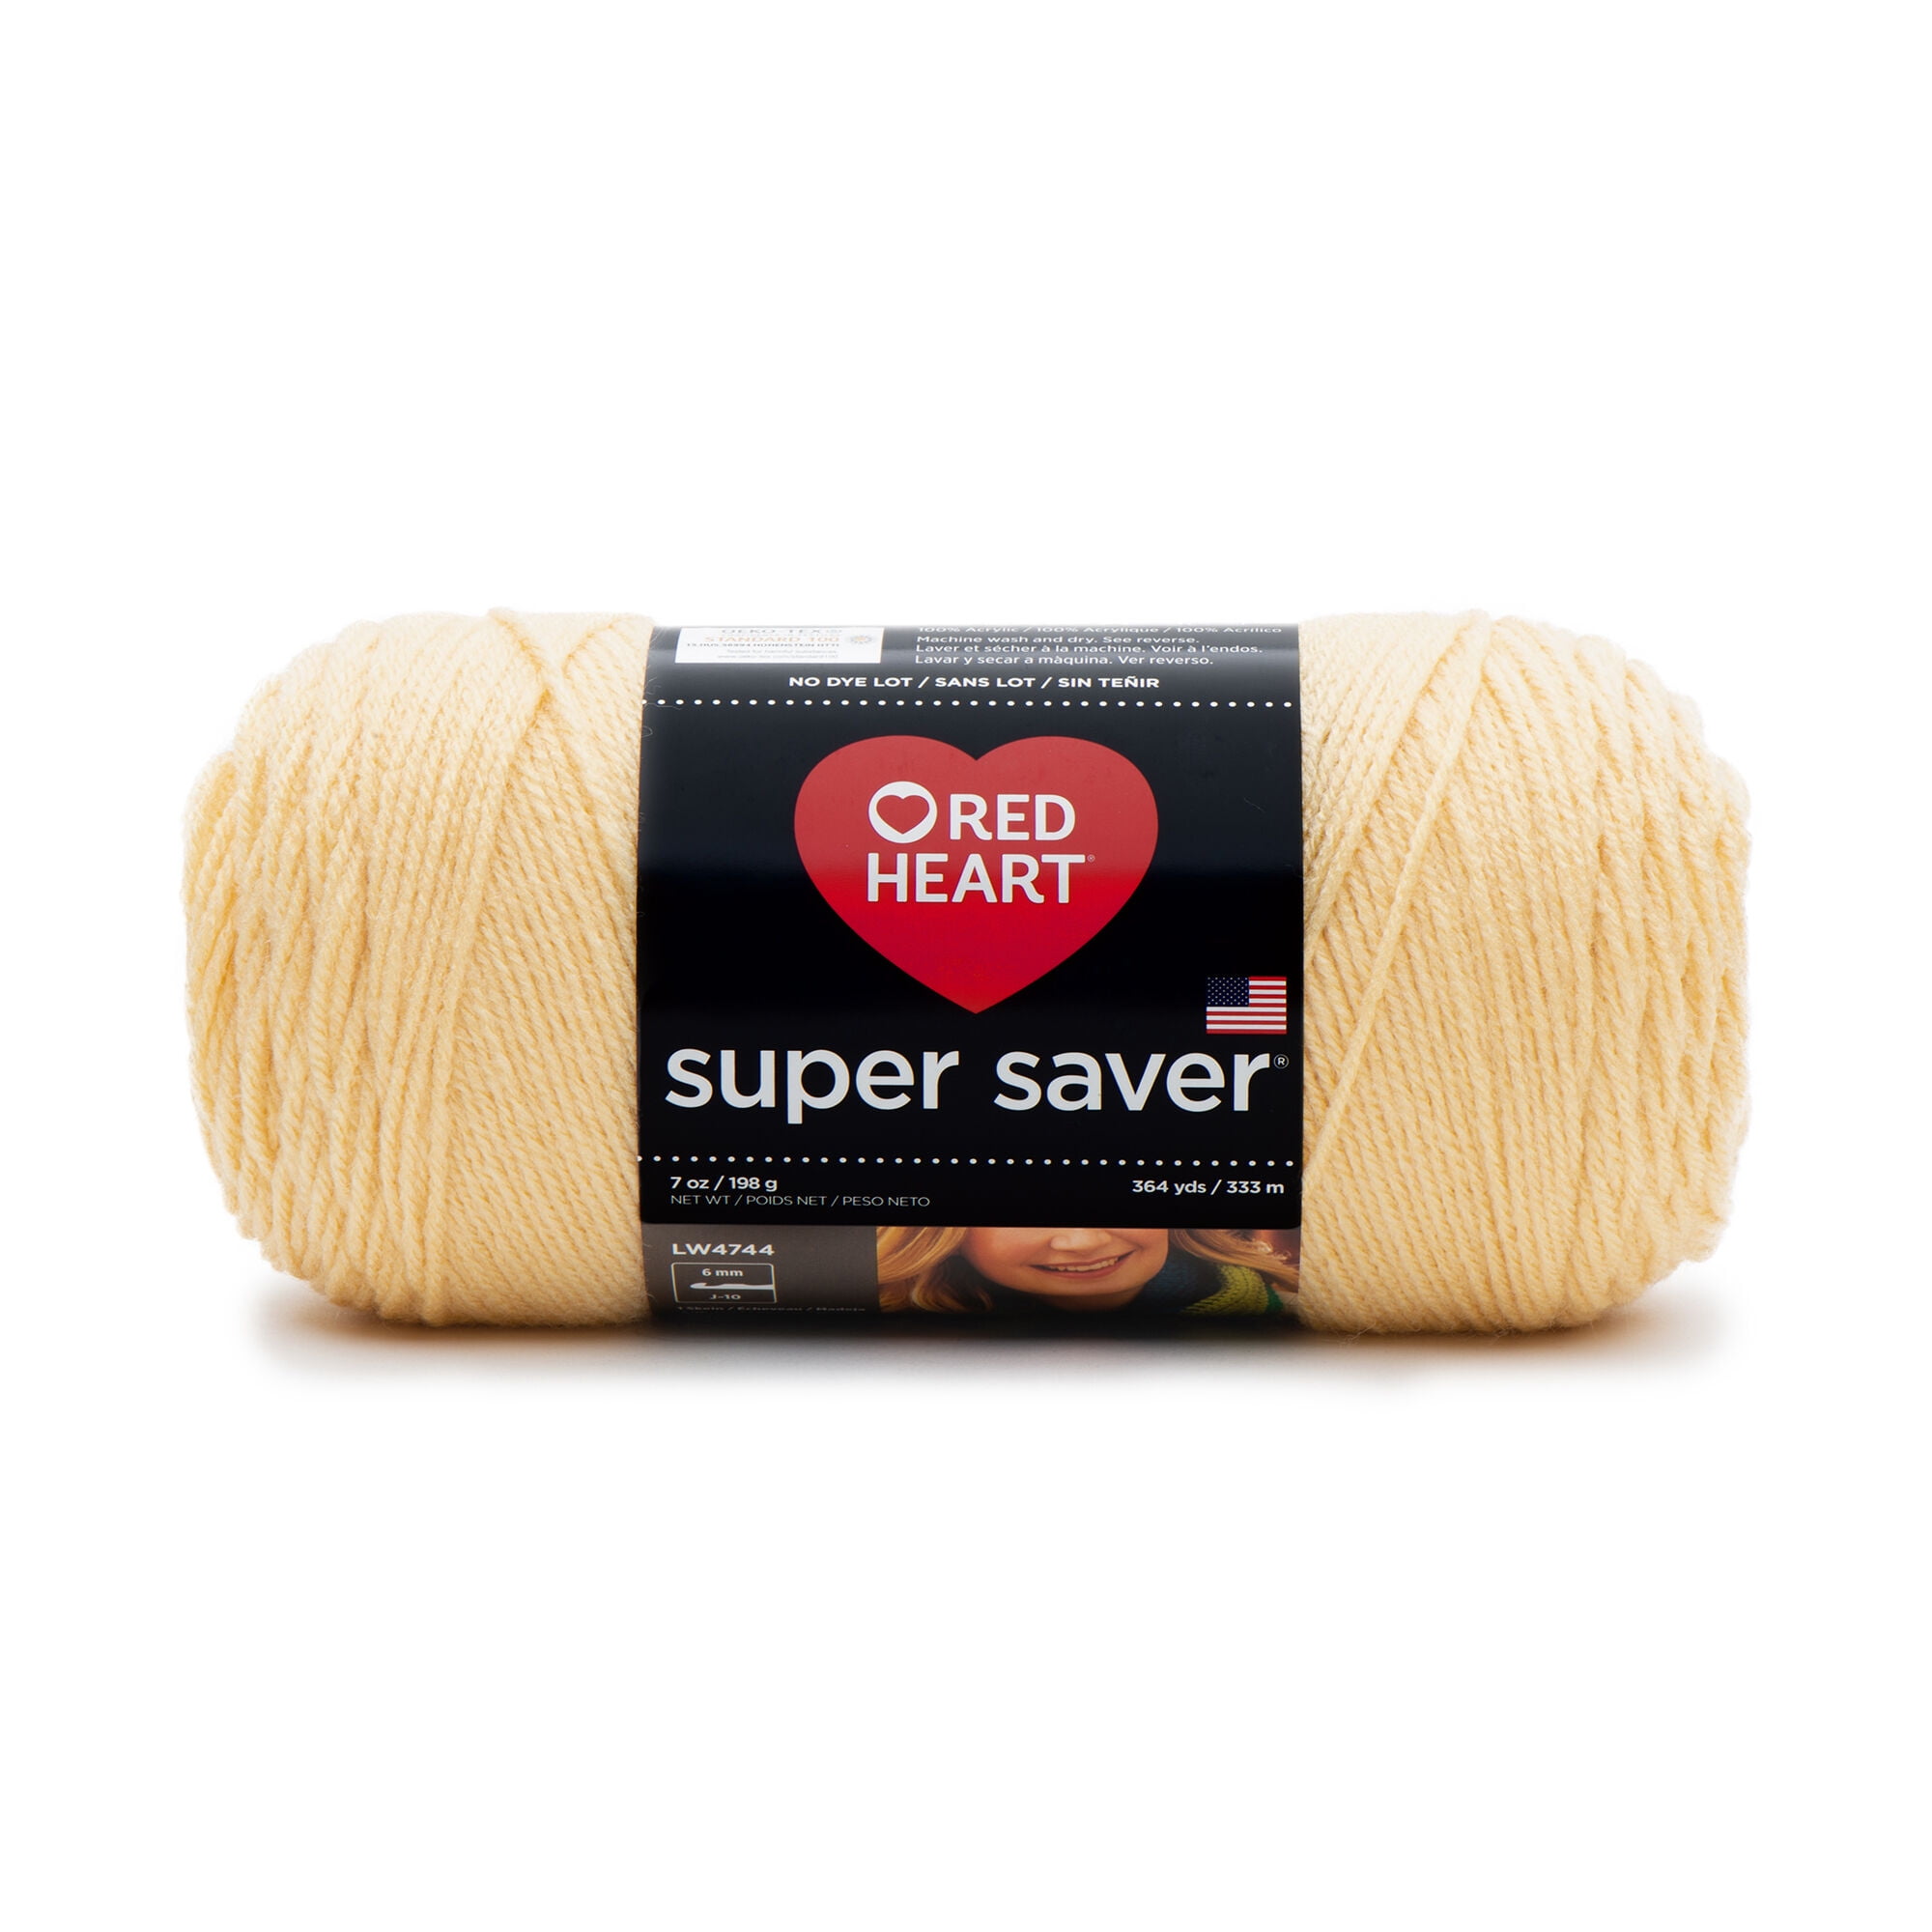 Red Heart Super Saver Yarn - Cornmeal